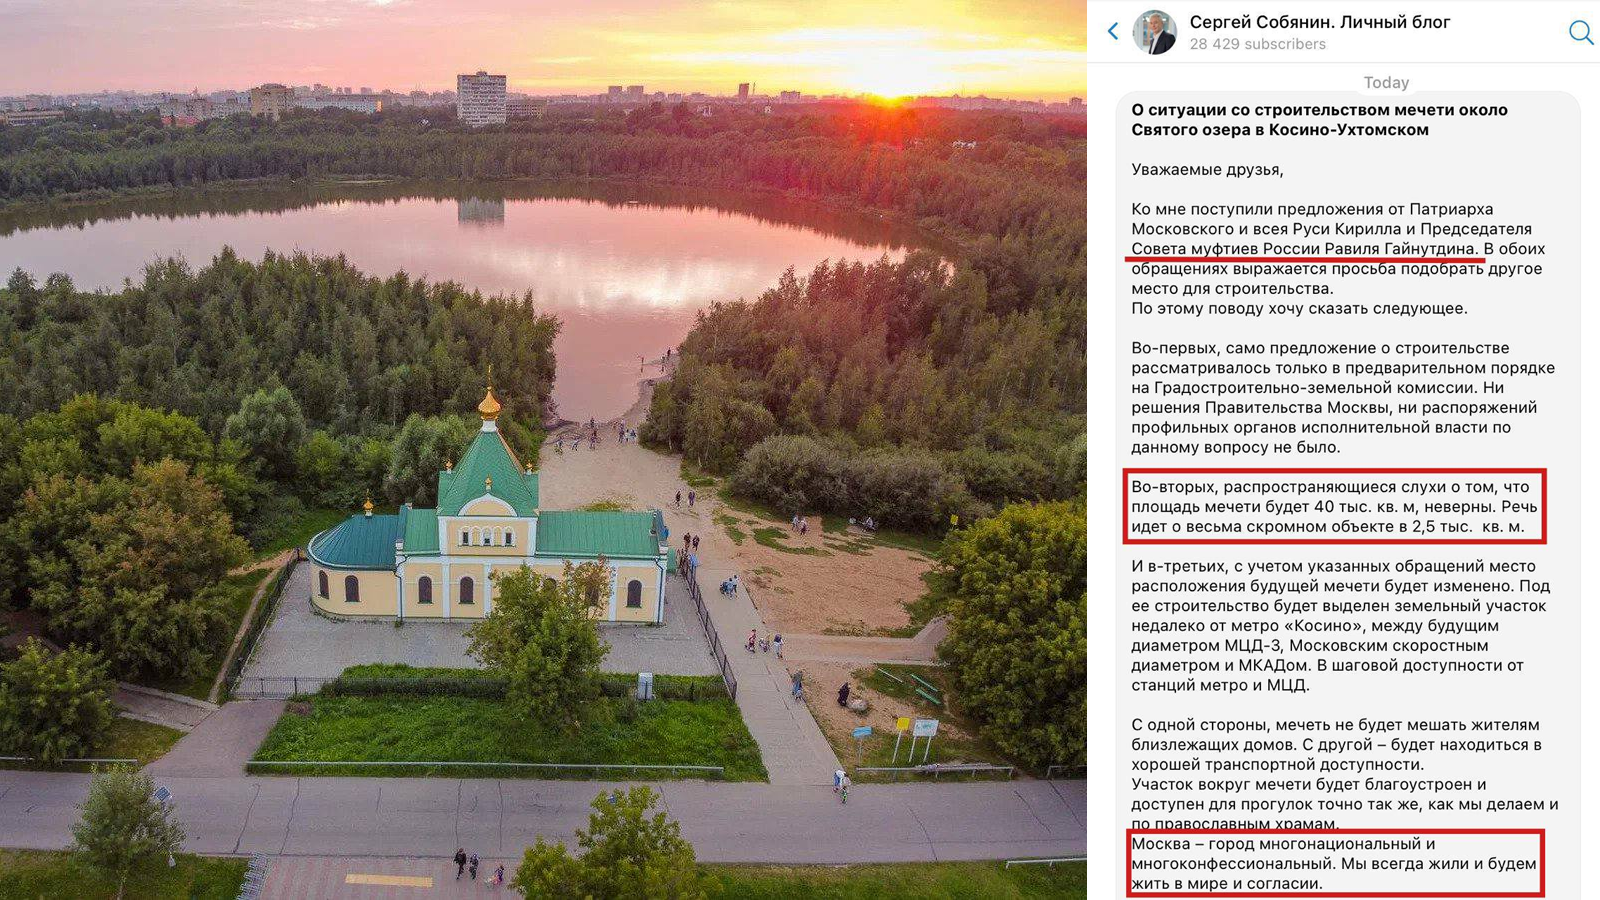 Мэр Москвы сказал, что мусульмане слишком много себе позволяют